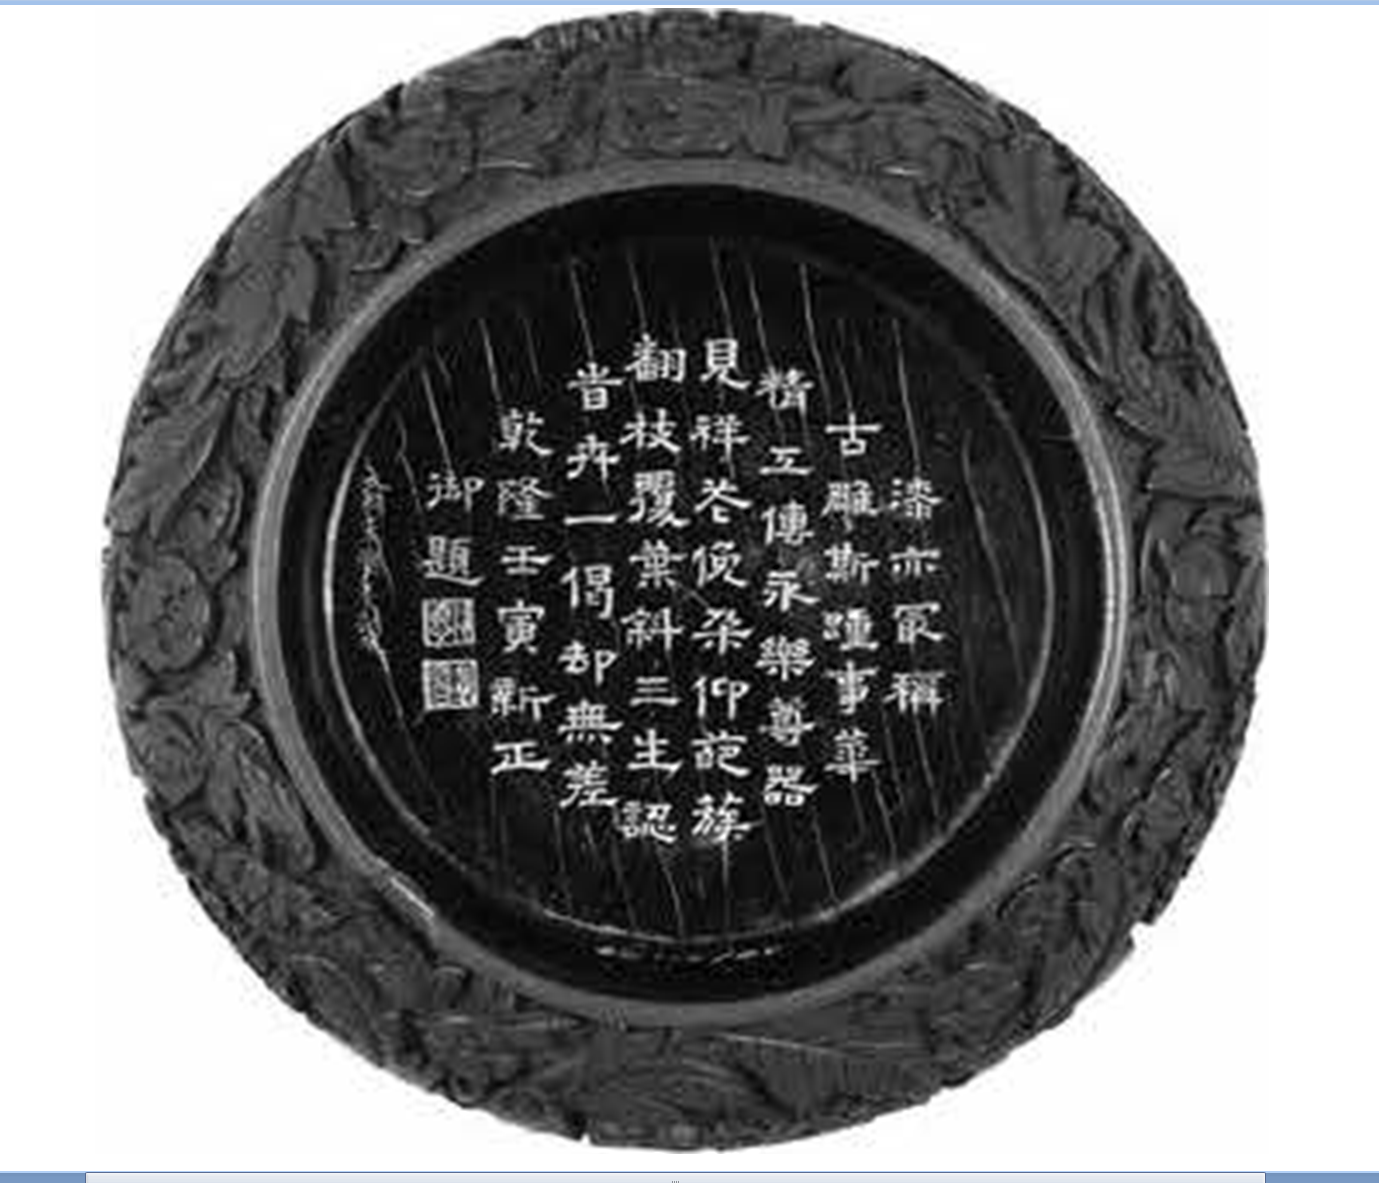 朱髹增華: 明初(1368-1435)官用剔紅器及其相關意涵– [临渊阁]天地一家春